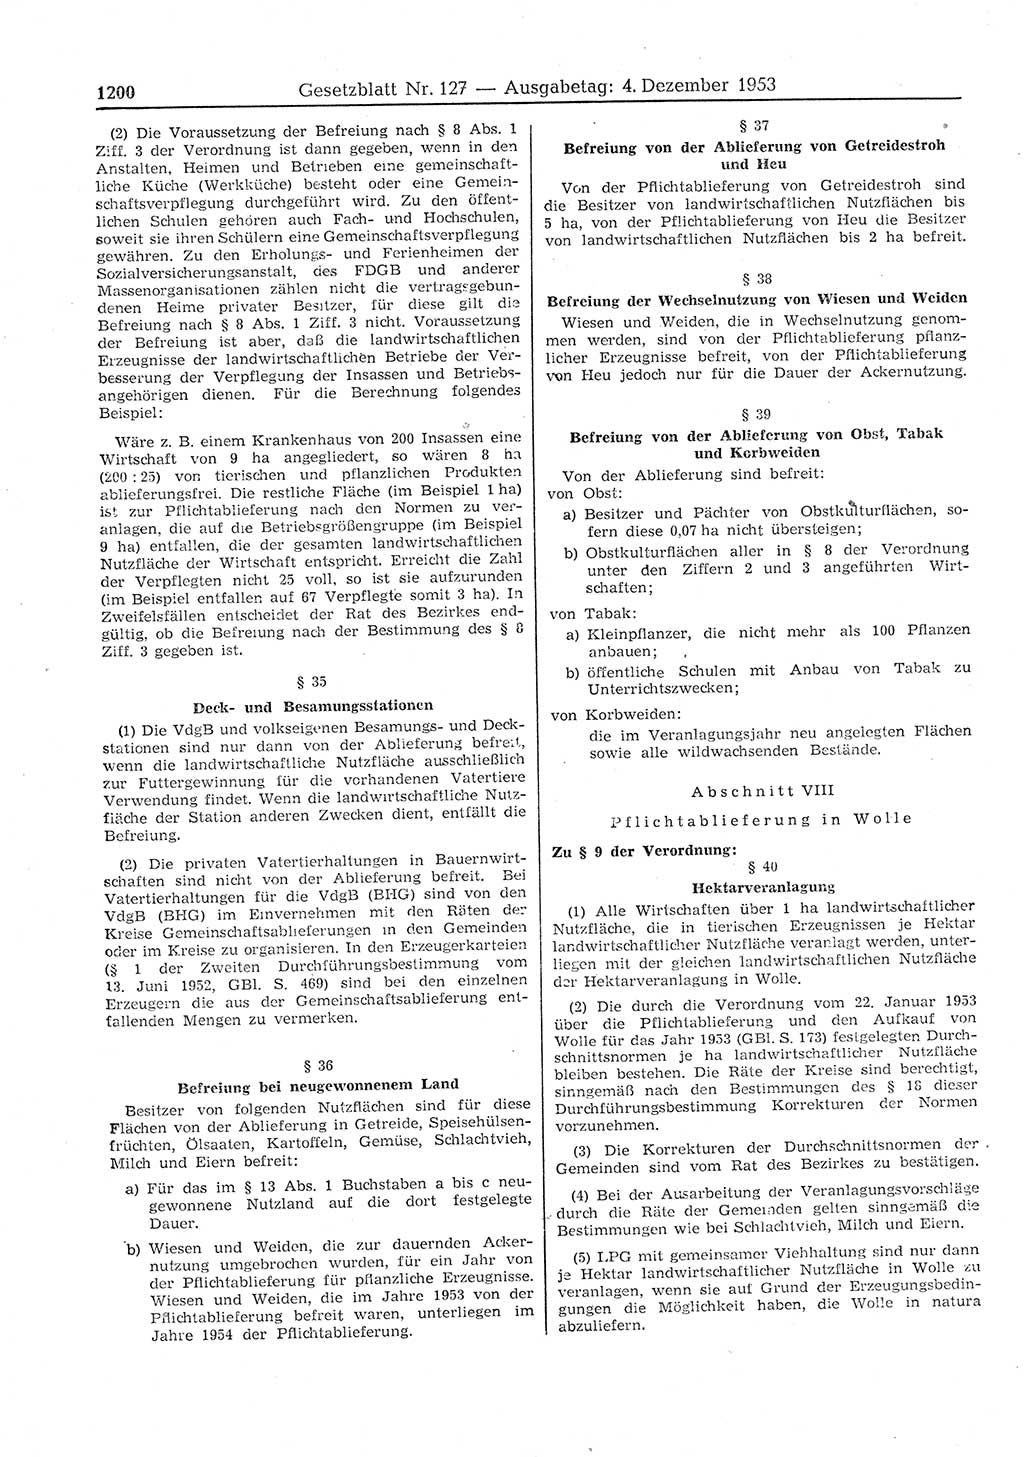 Gesetzblatt (GBl.) der Deutschen Demokratischen Republik (DDR) 1953, Seite 1200 (GBl. DDR 1953, S. 1200)